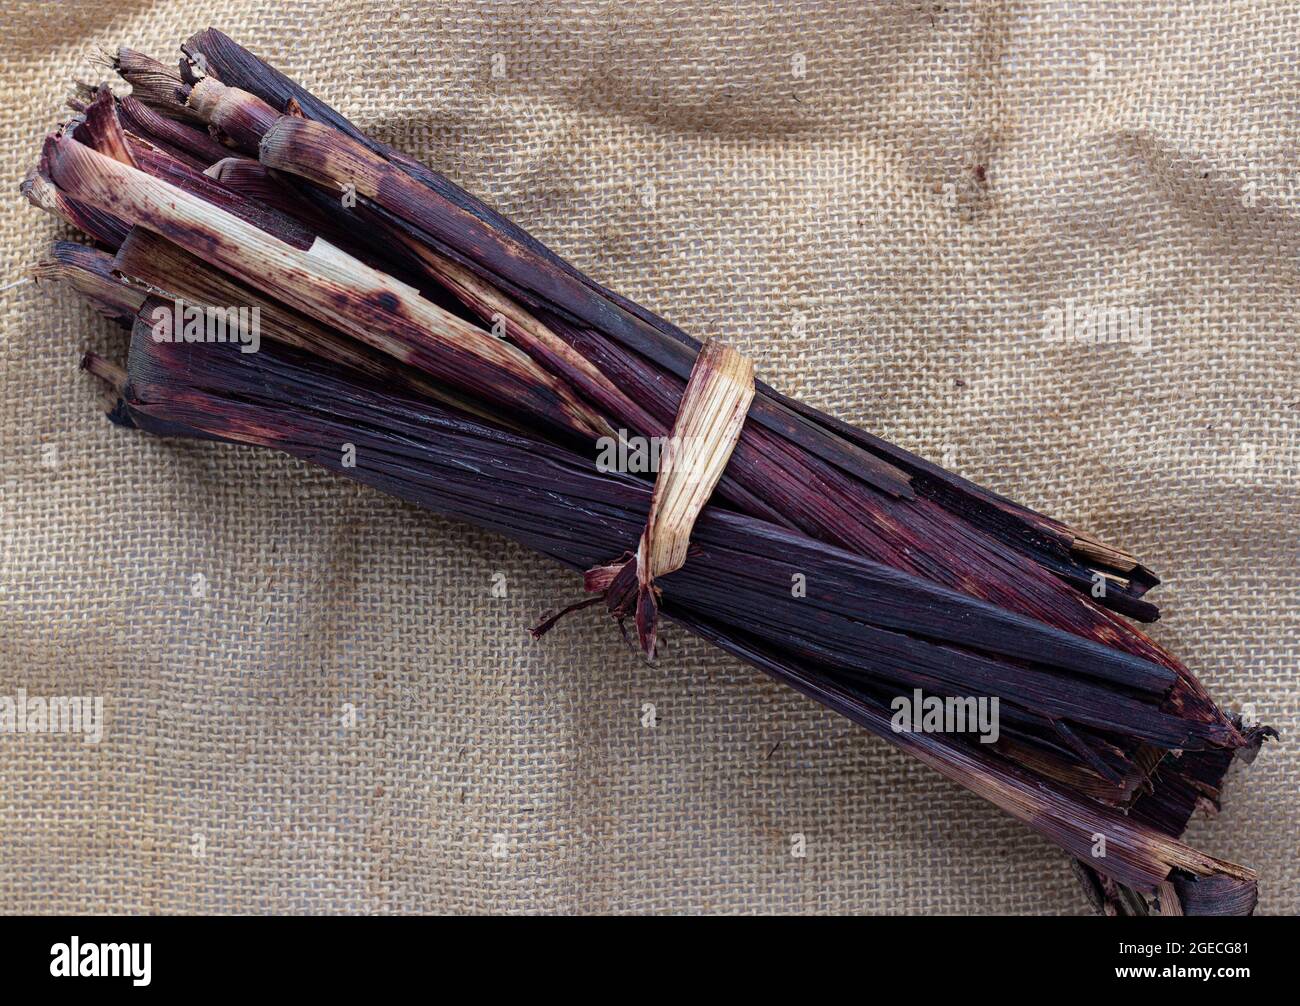 Le sorgho bicolore gaine/tige, appelé Waakye et utilisé comme colorant alimentaire au Ghana Banque D'Images